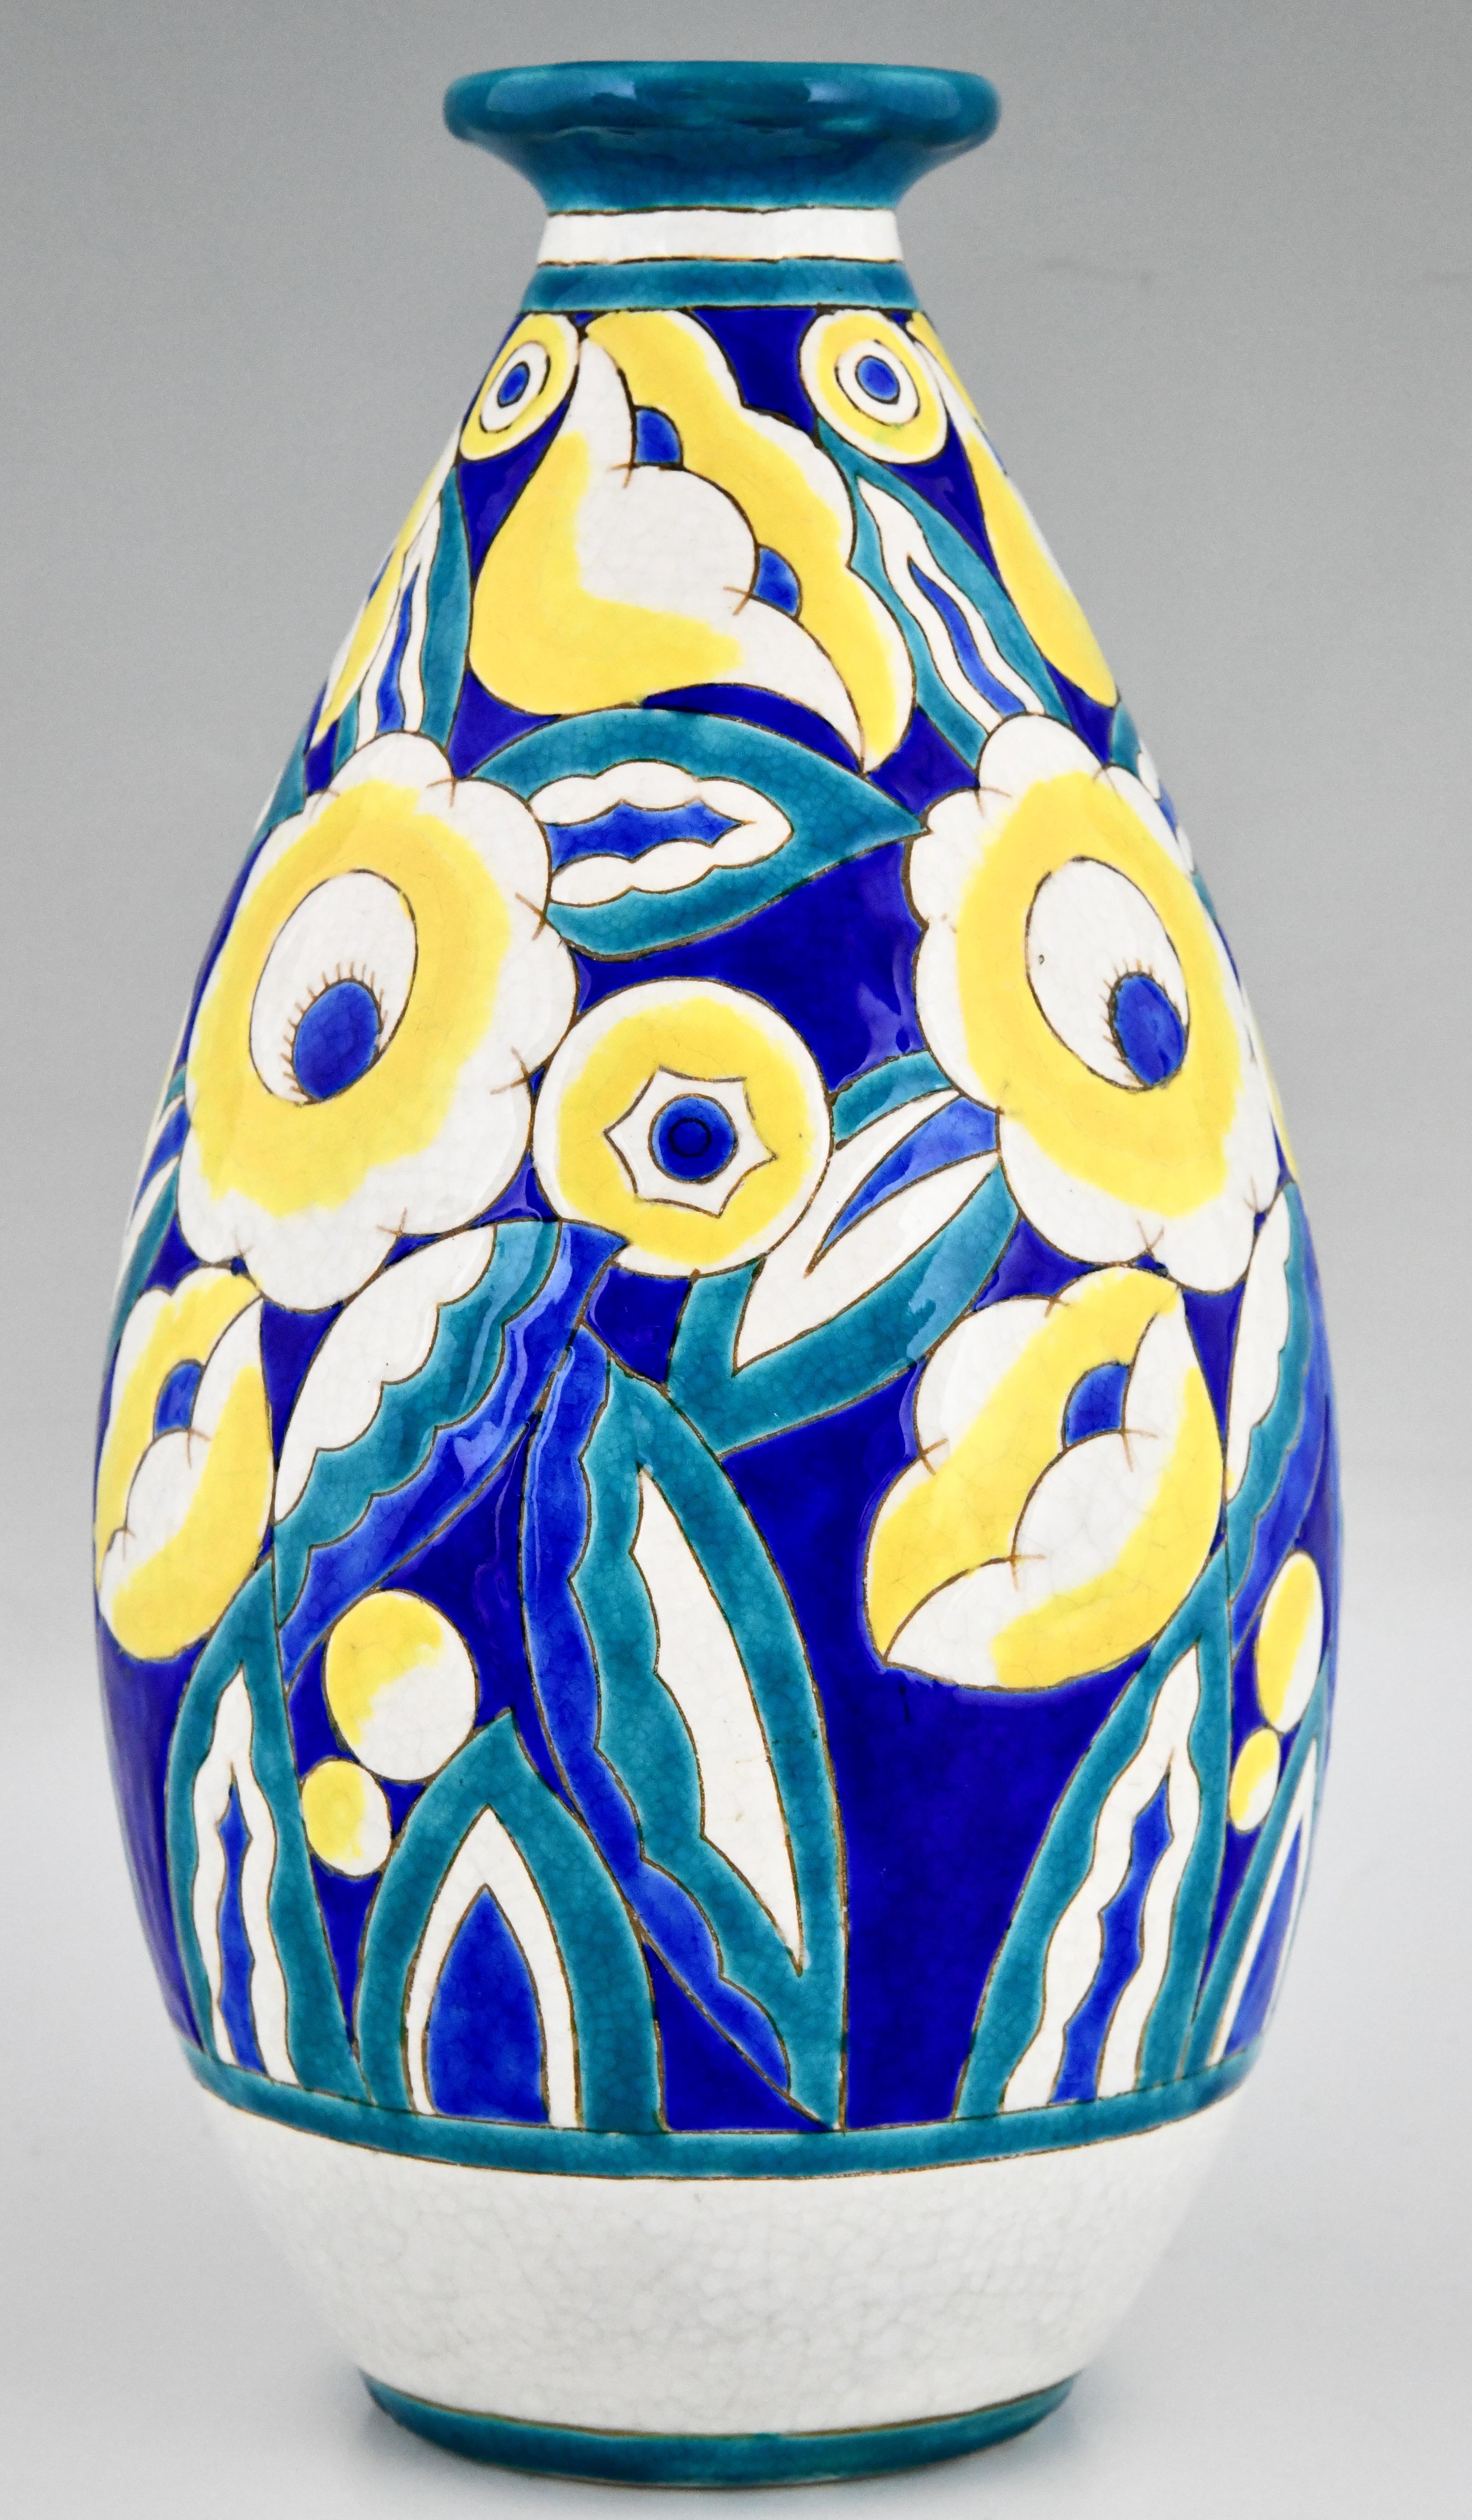 Mid-20th Century Pair of Art Deco Ceramic Vases with Flowers by Keramis, Belgium 1932